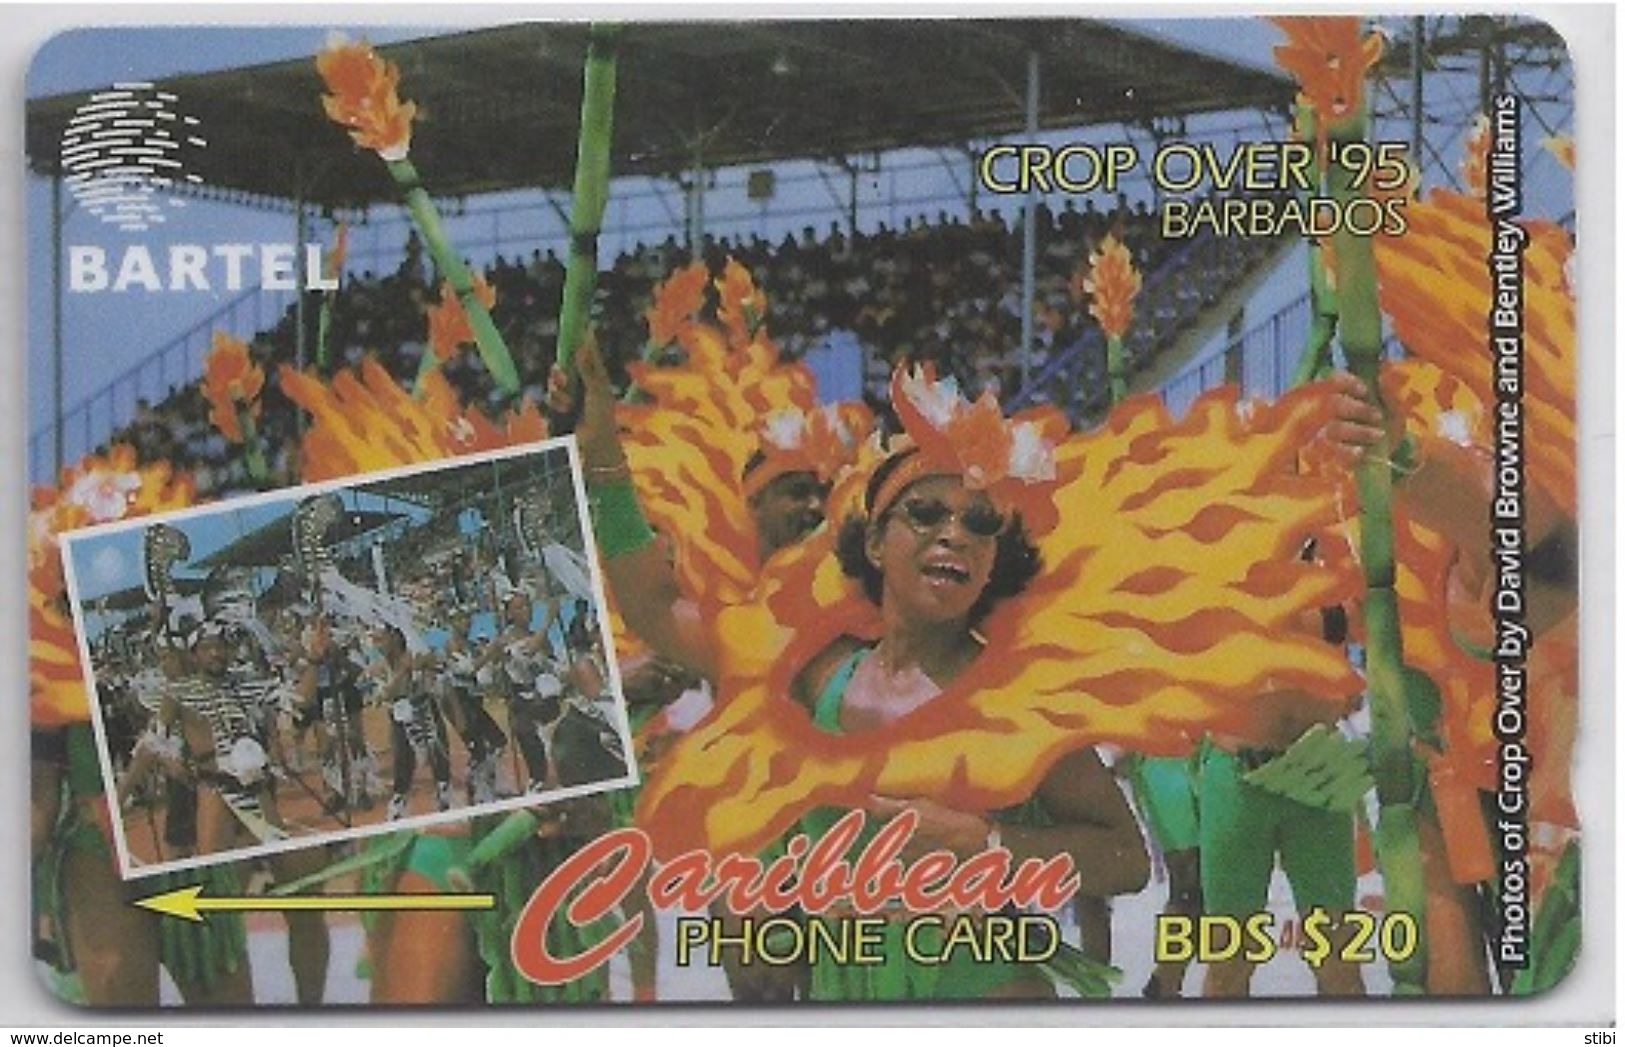 BARBADOS - CROP OVER '95 - 87CBDA - Barbados